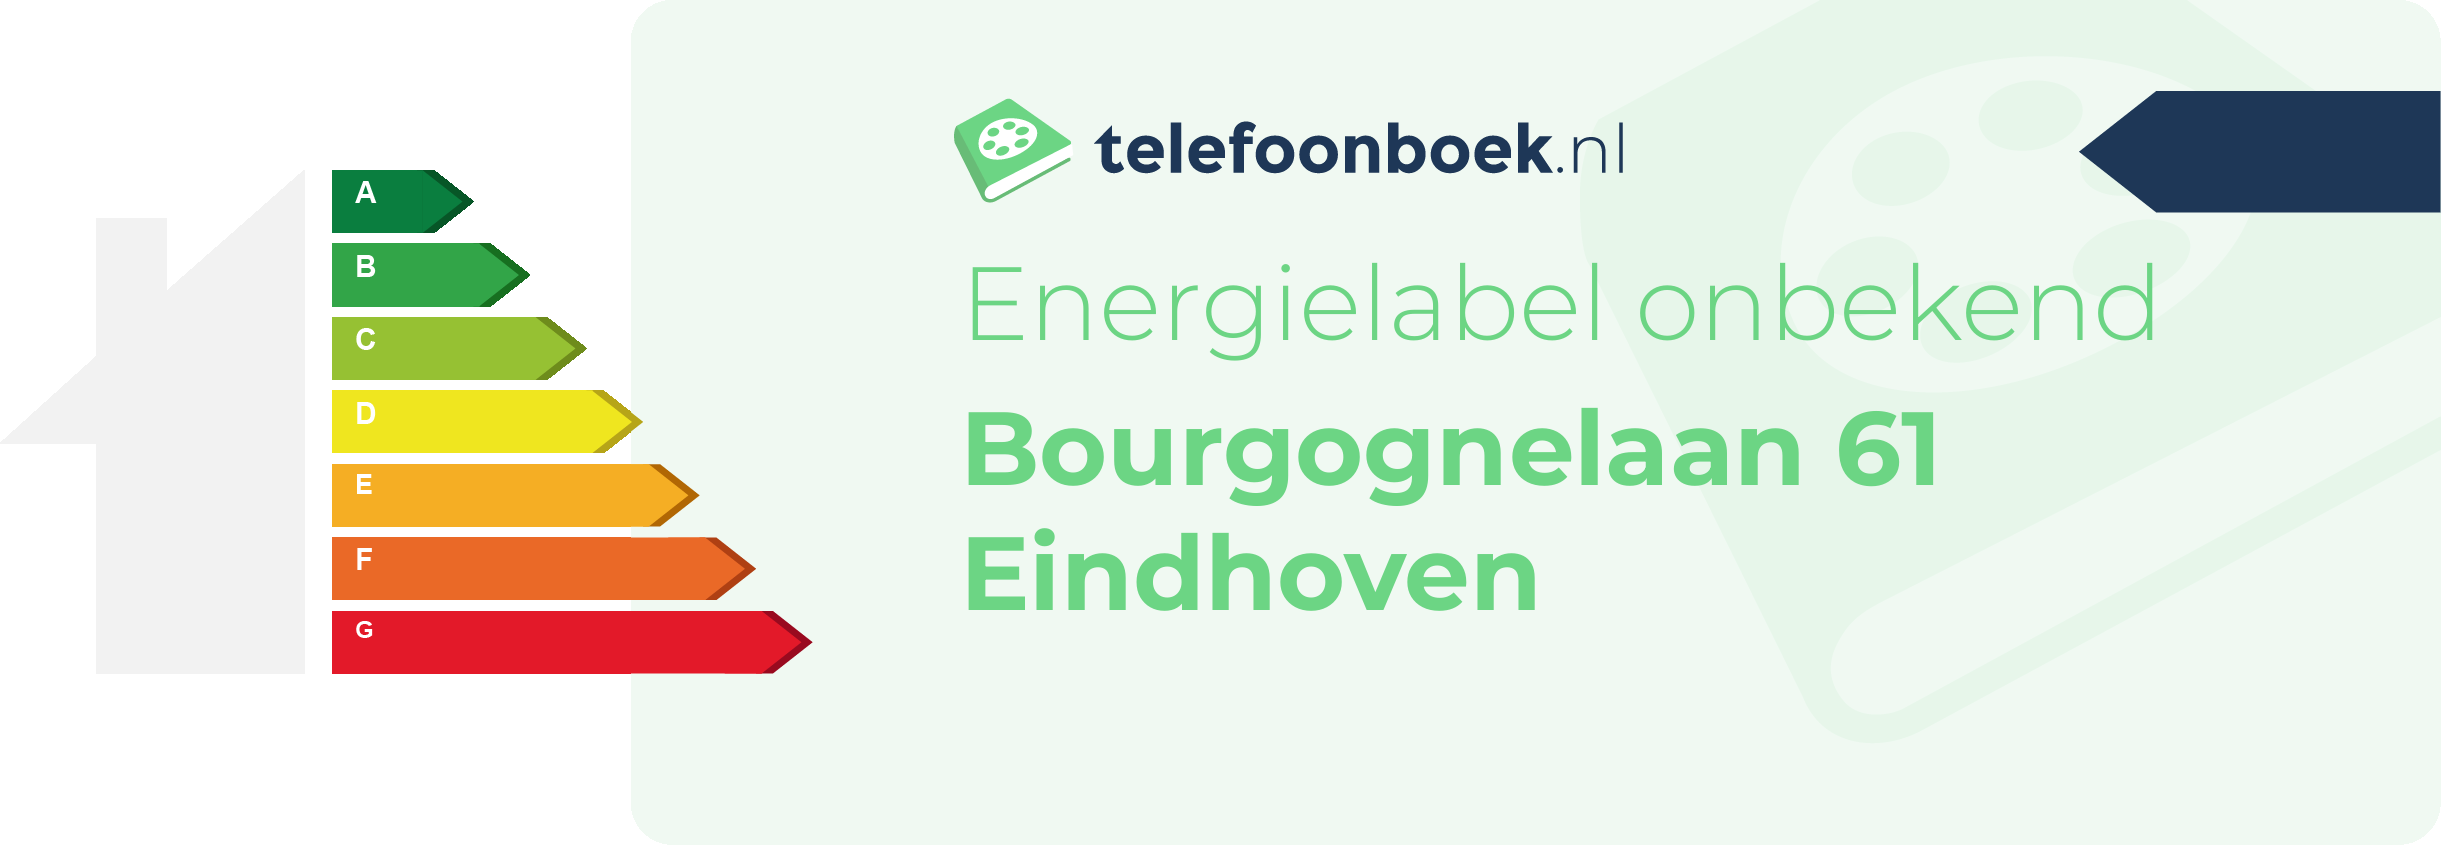 Energielabel Bourgognelaan 61 Eindhoven